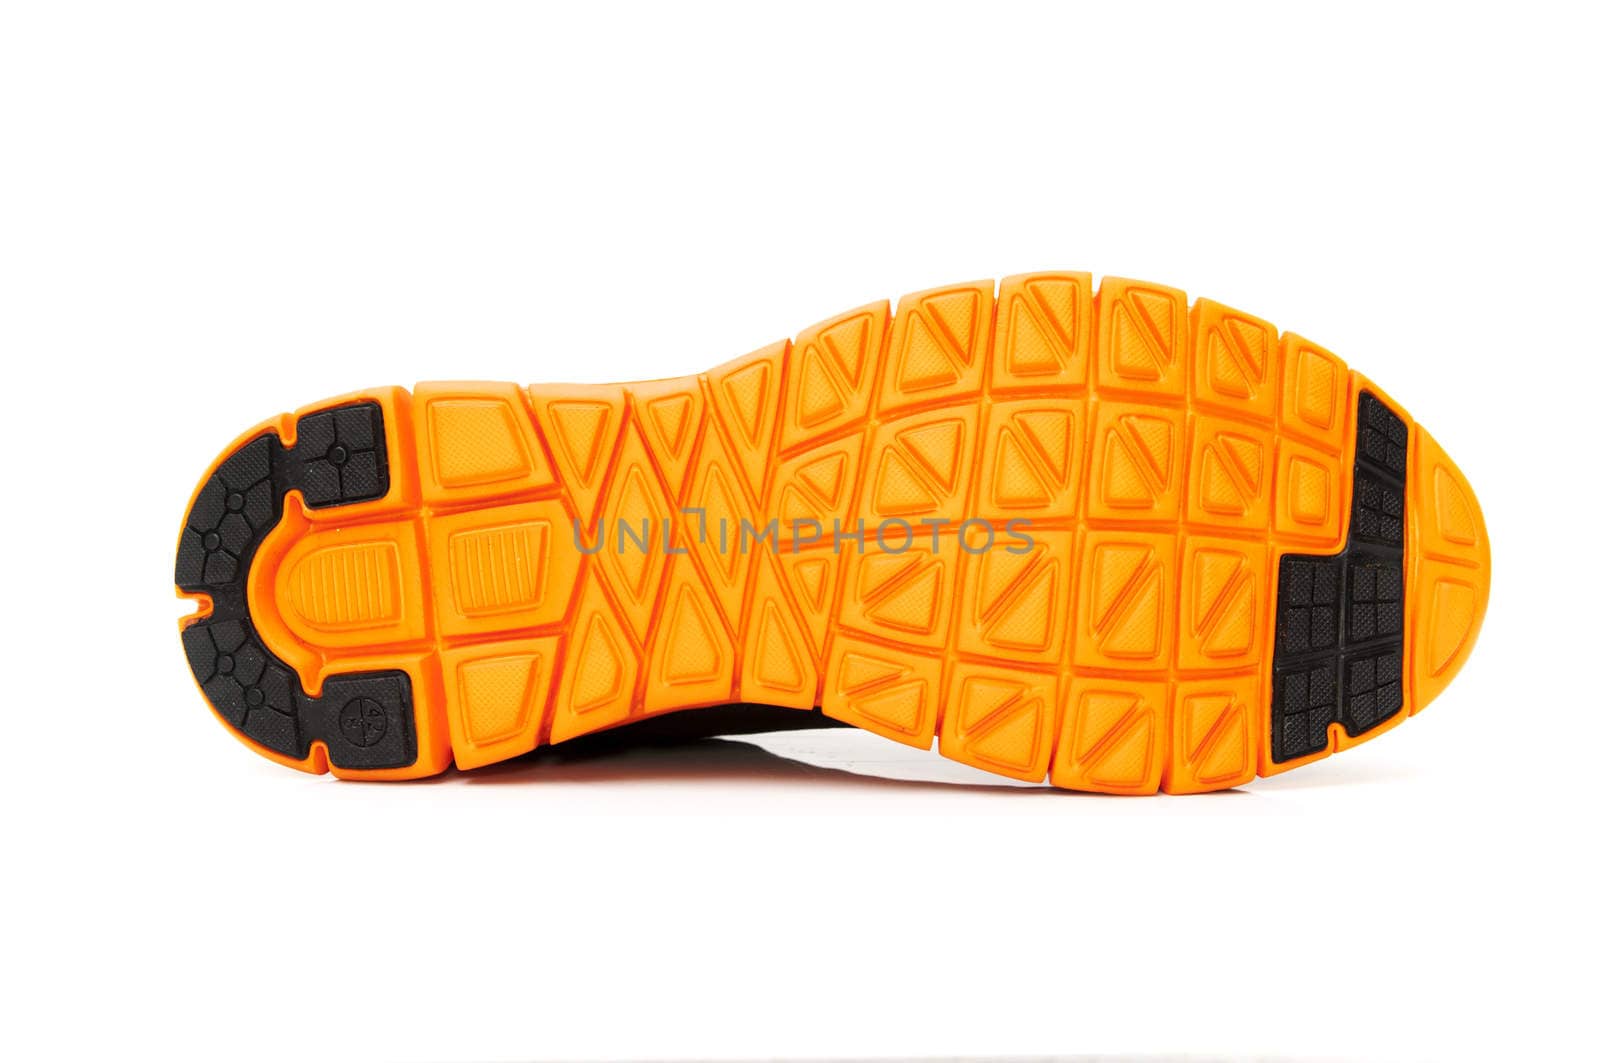 shoe sole orange on a white background